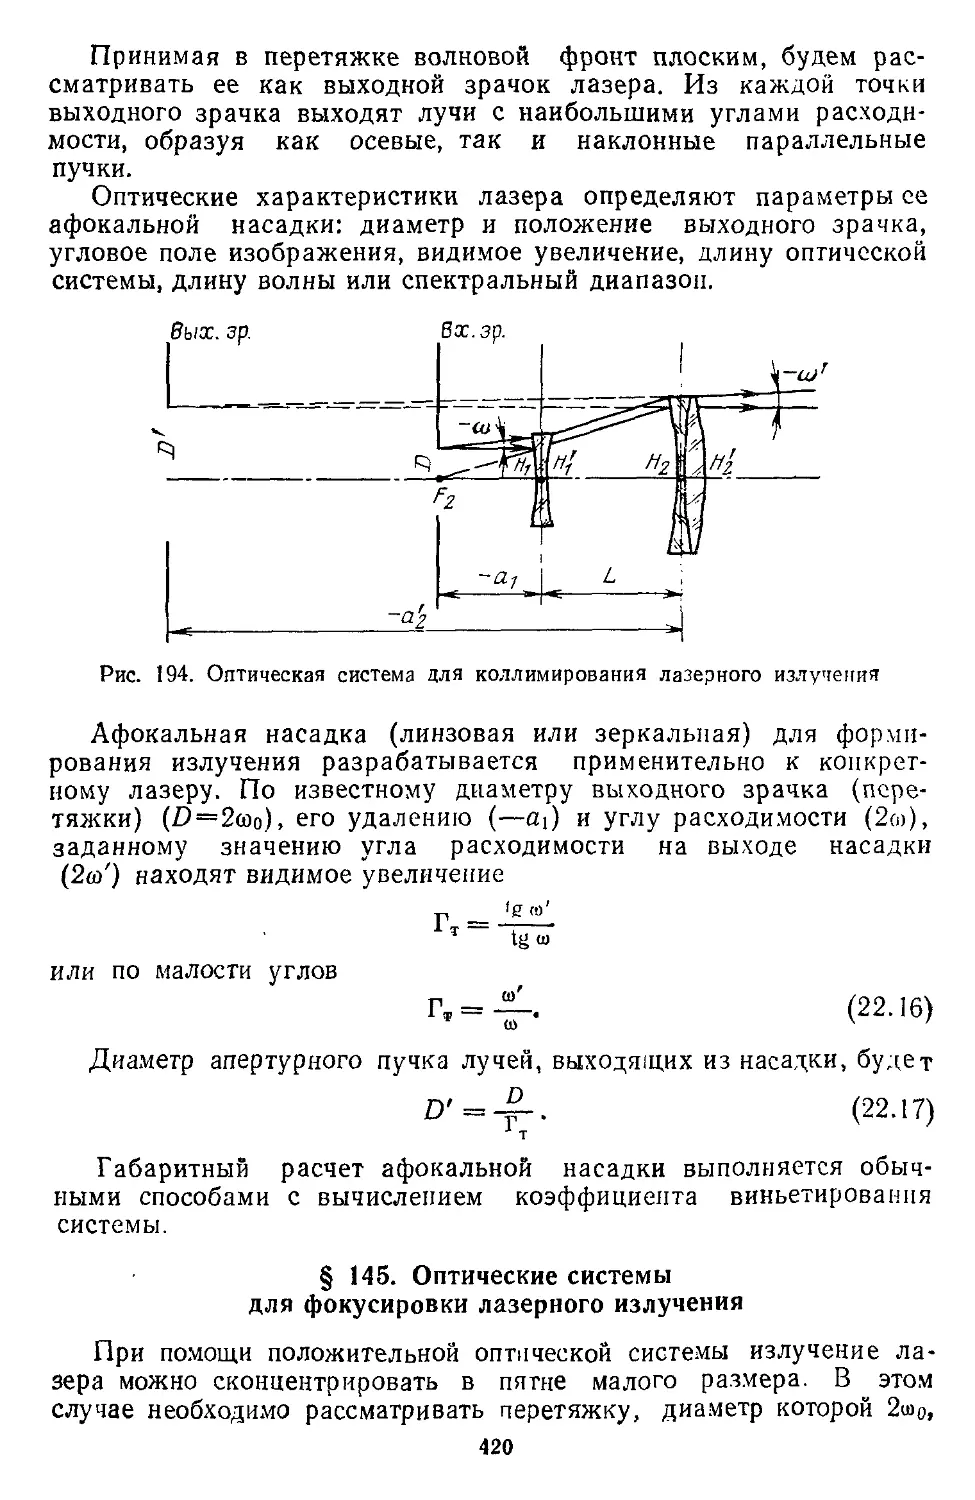 § 145. Оптические системы для фокусировки лазерного излучения